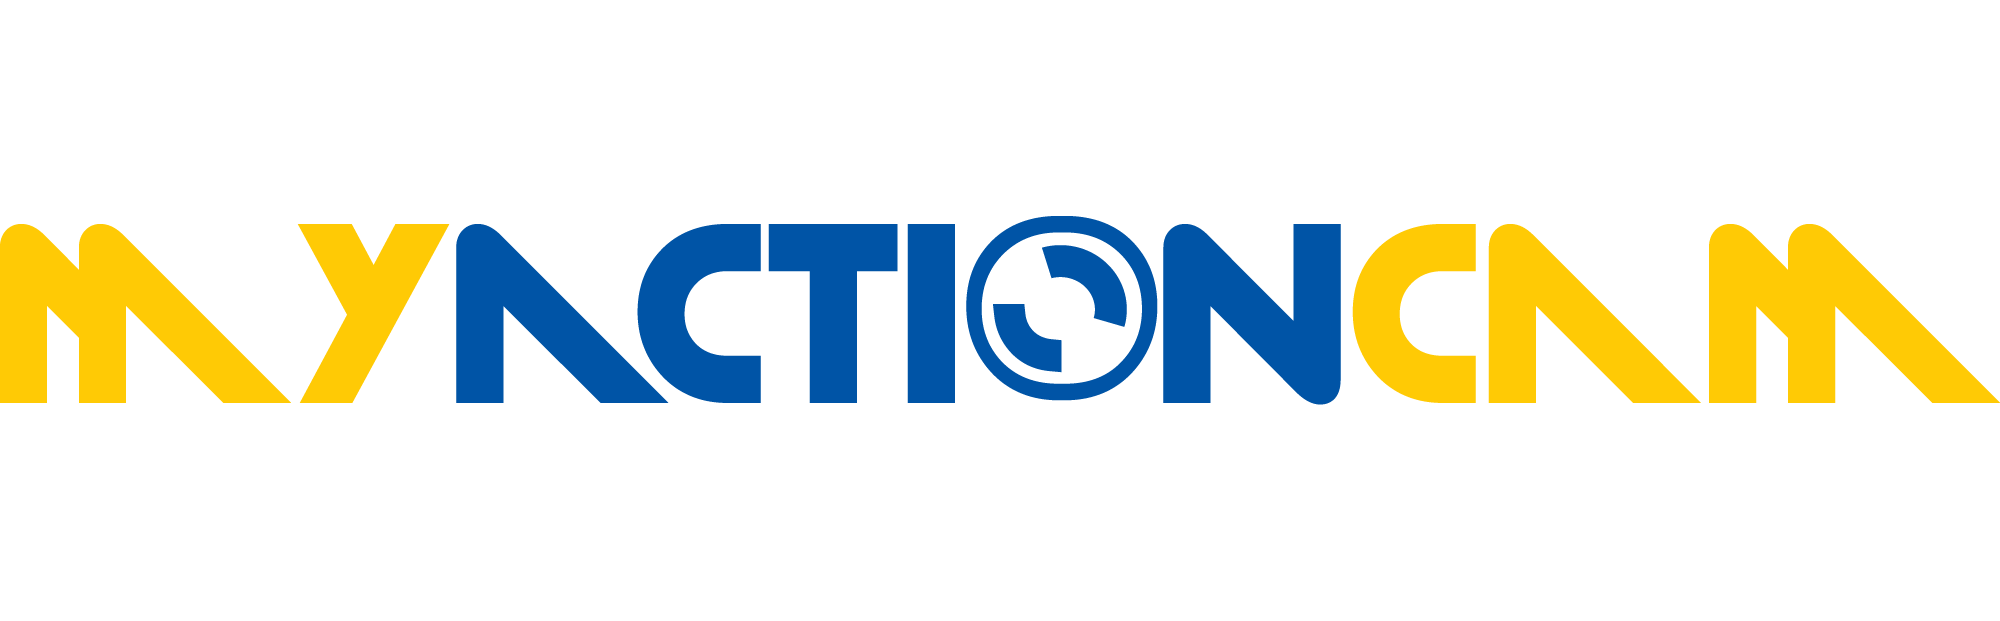 MyActionCam logó